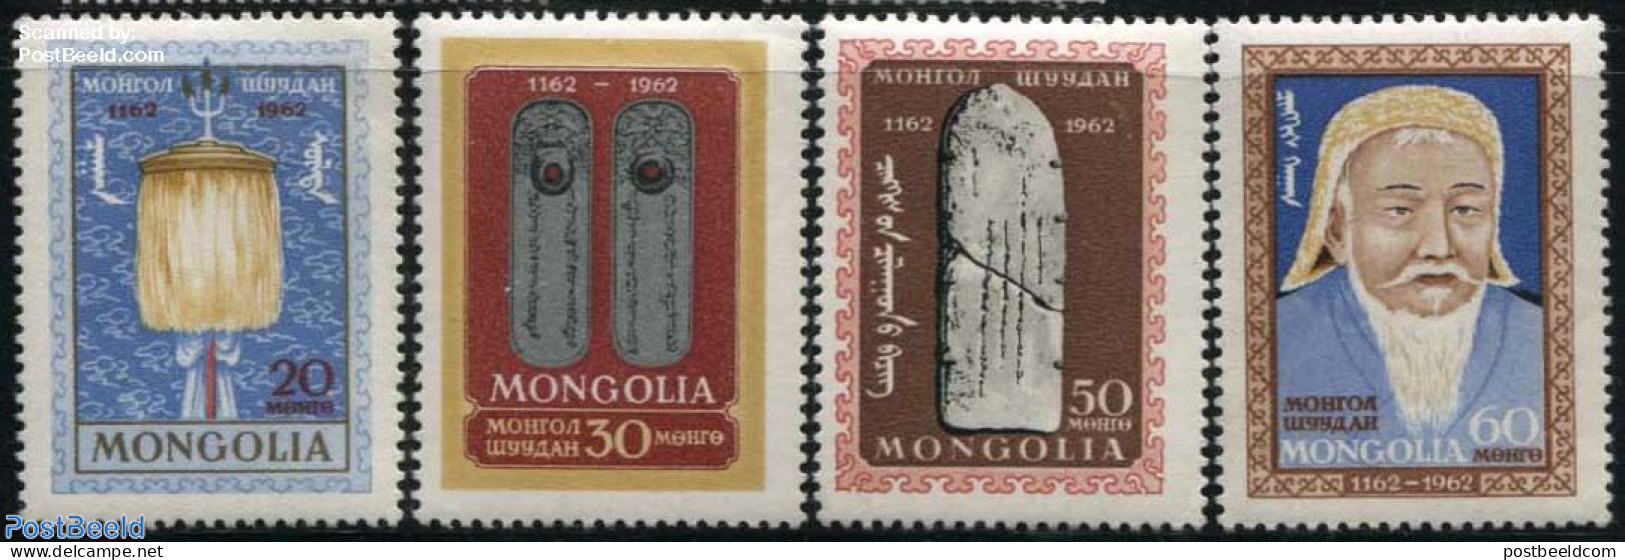 Mongolia 1962 Djenghis Khan 4v, Mint NH - Mongolei